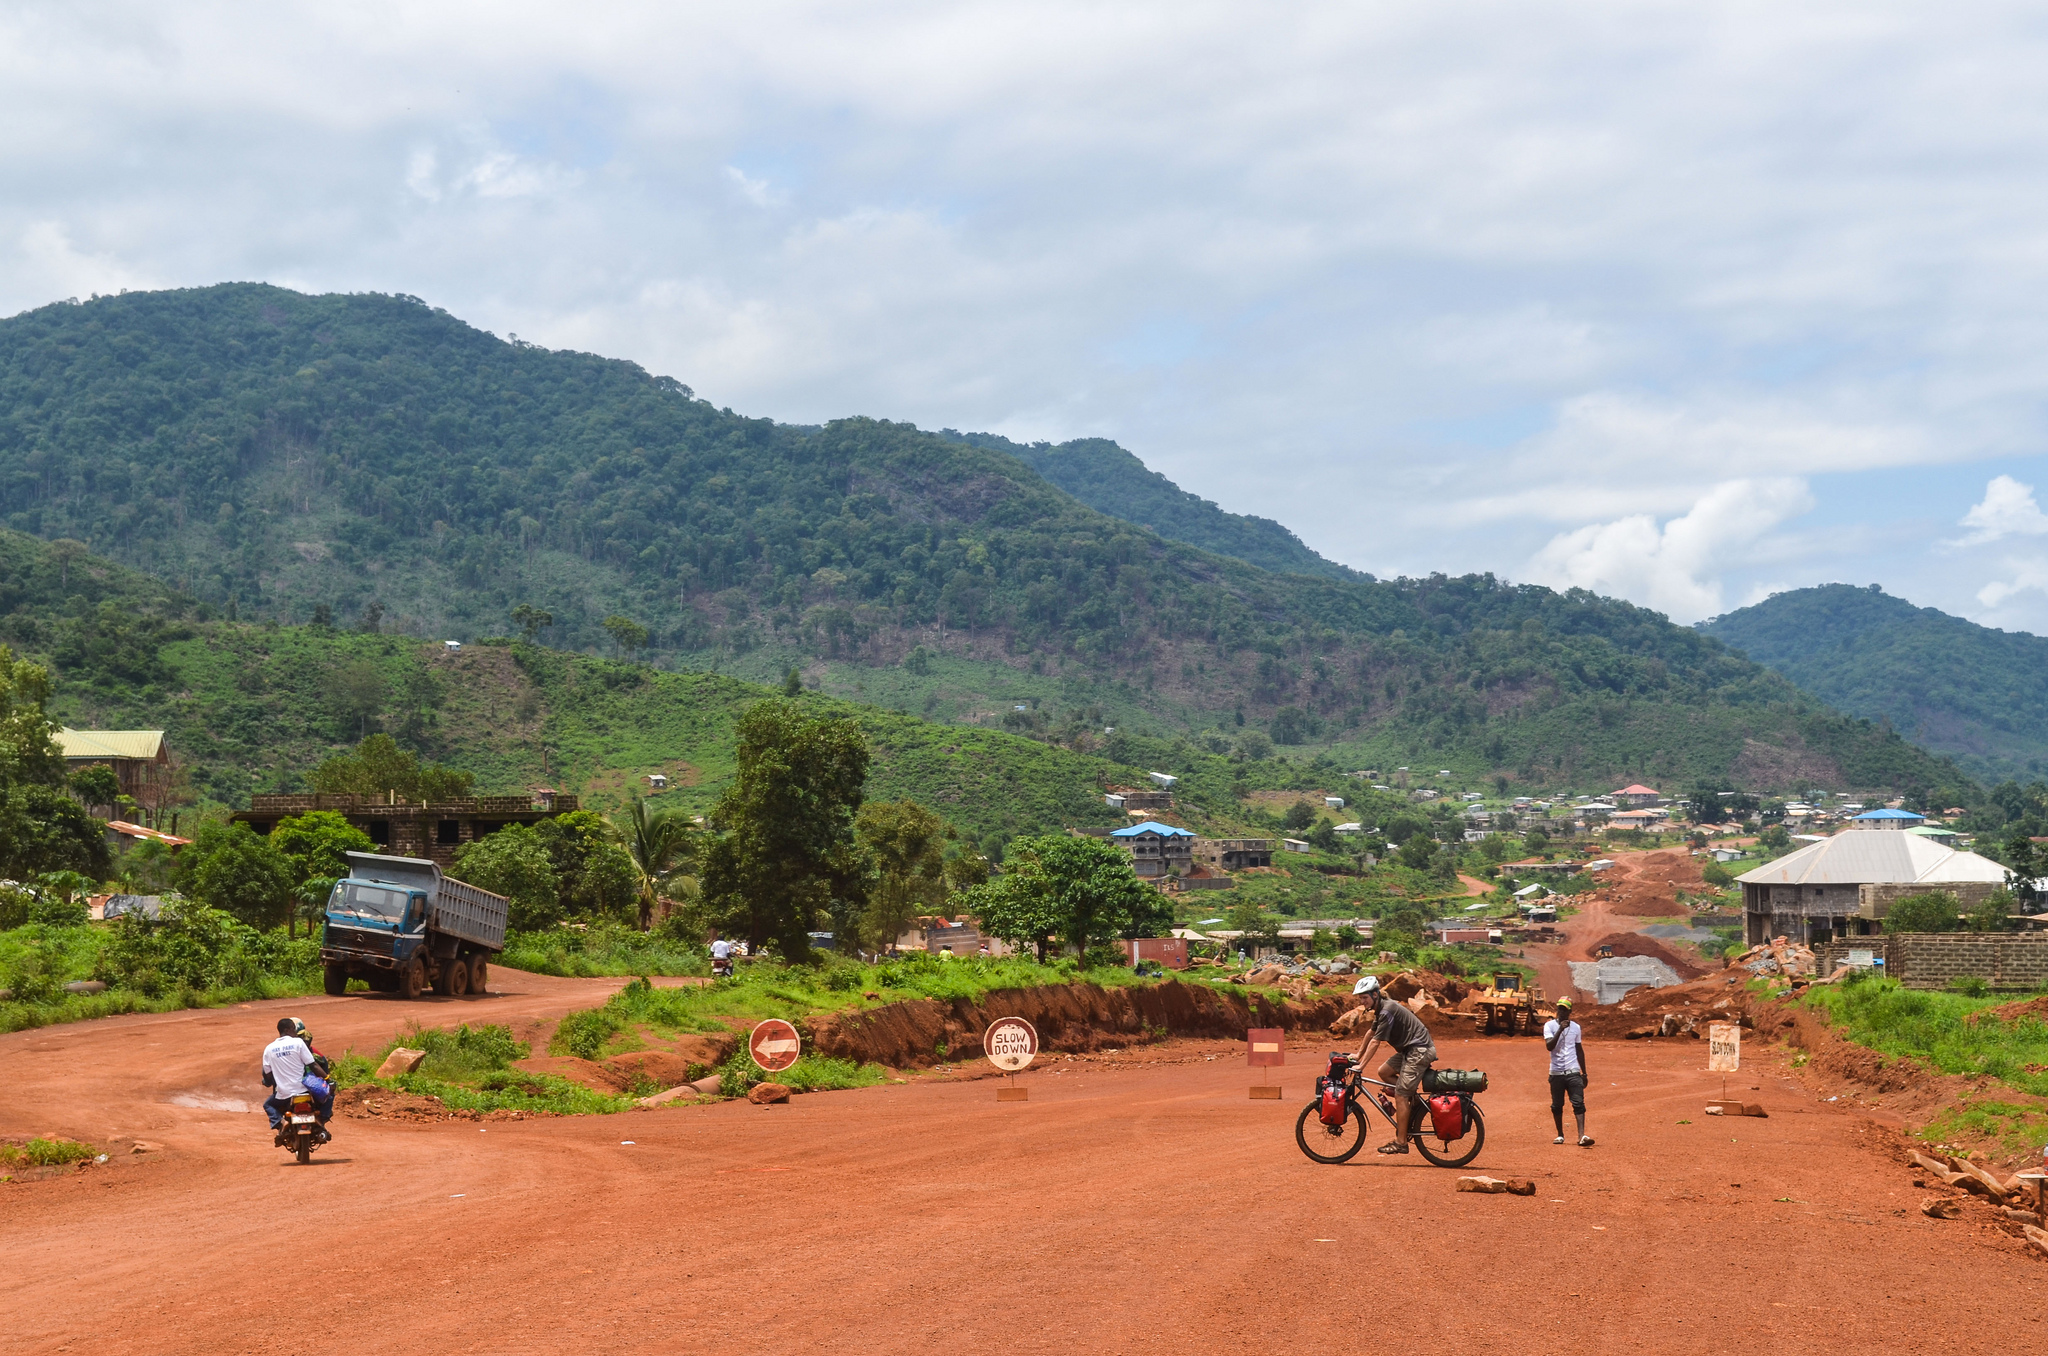 Aprendiendo del pasado: Impactos históricos de intervenciones en la agricultura de Sierra Leona